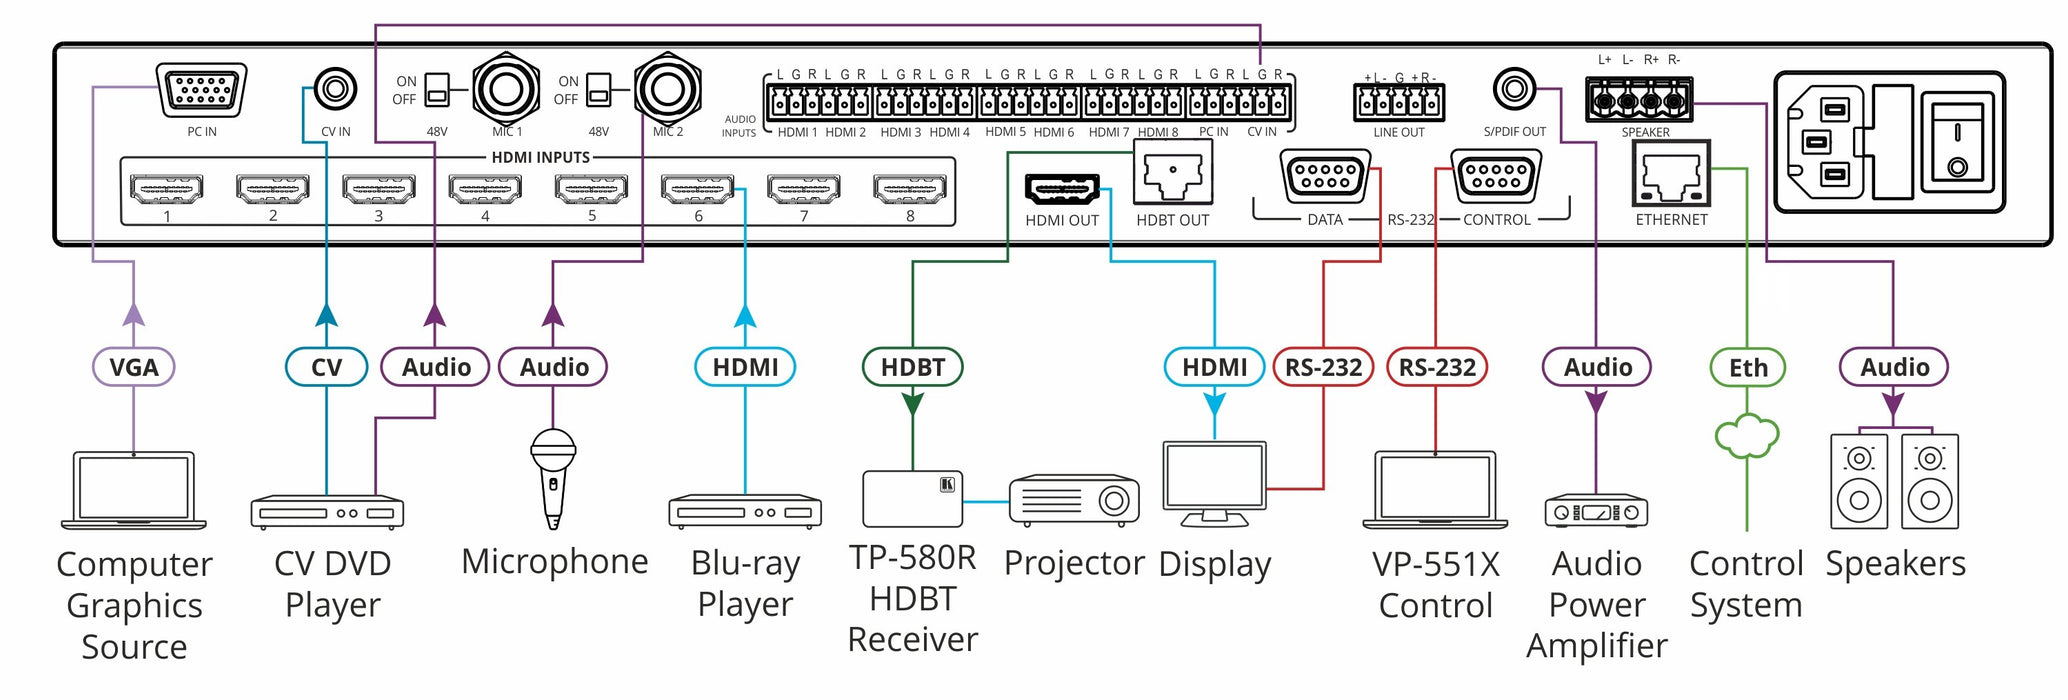 VP-551X Conmutador / Escalador de presentación 4K de 10 entradas y 18 G